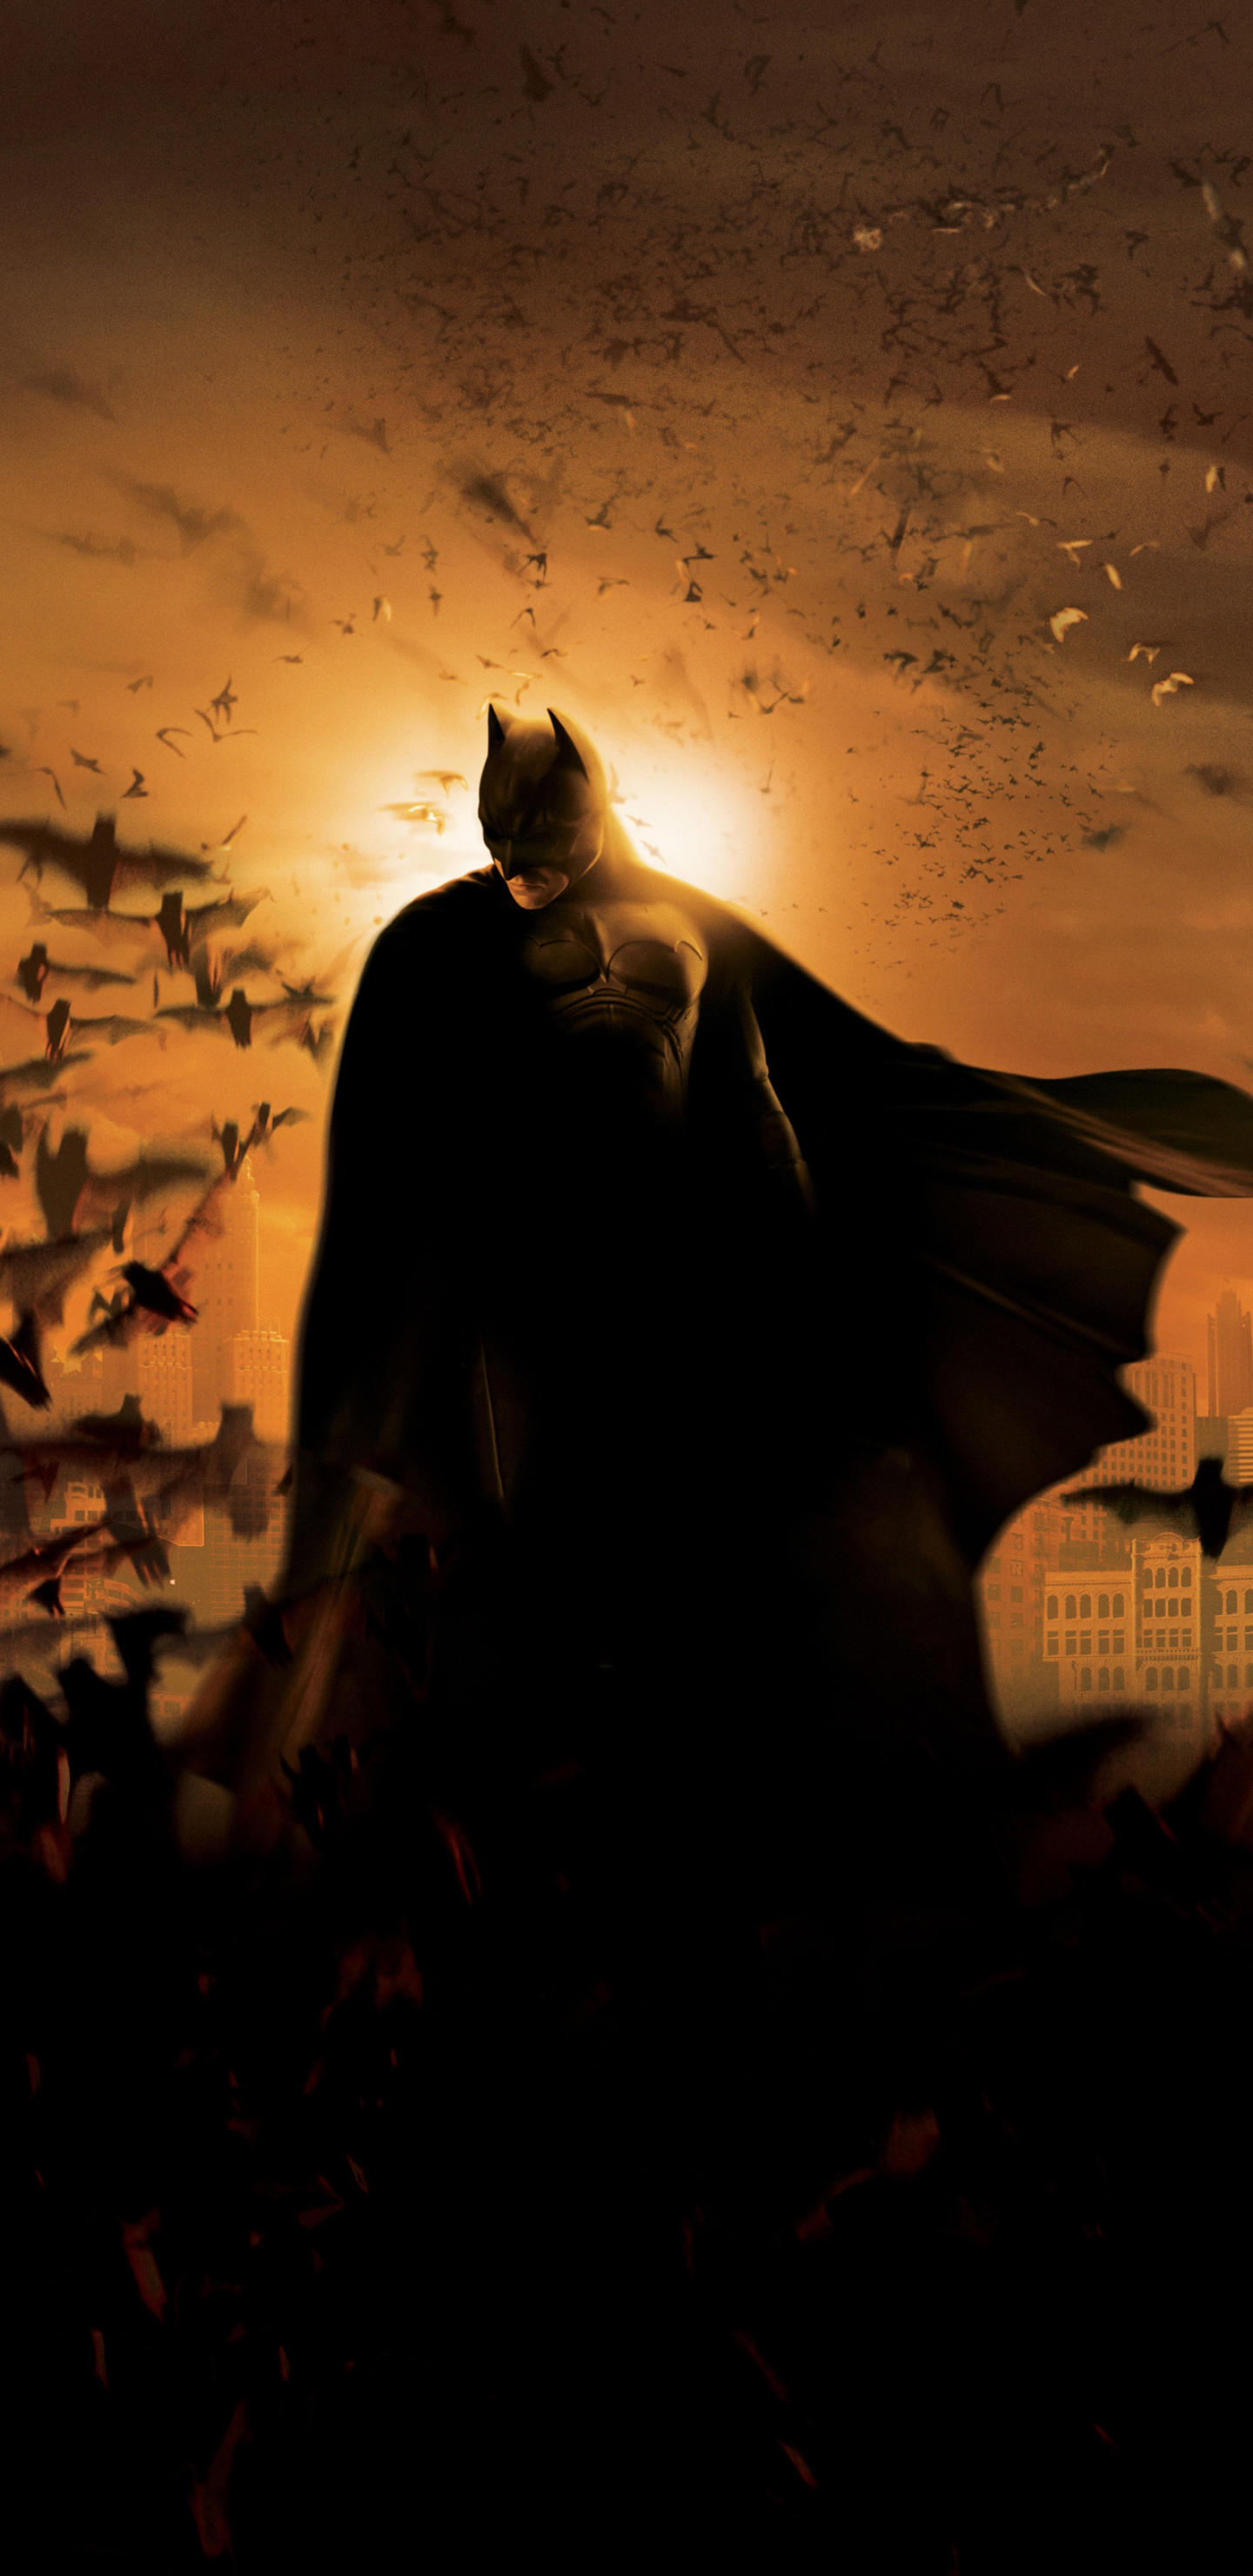 bruce wayne, superhero, movie, batman begins, batman, bat, dc comics, night